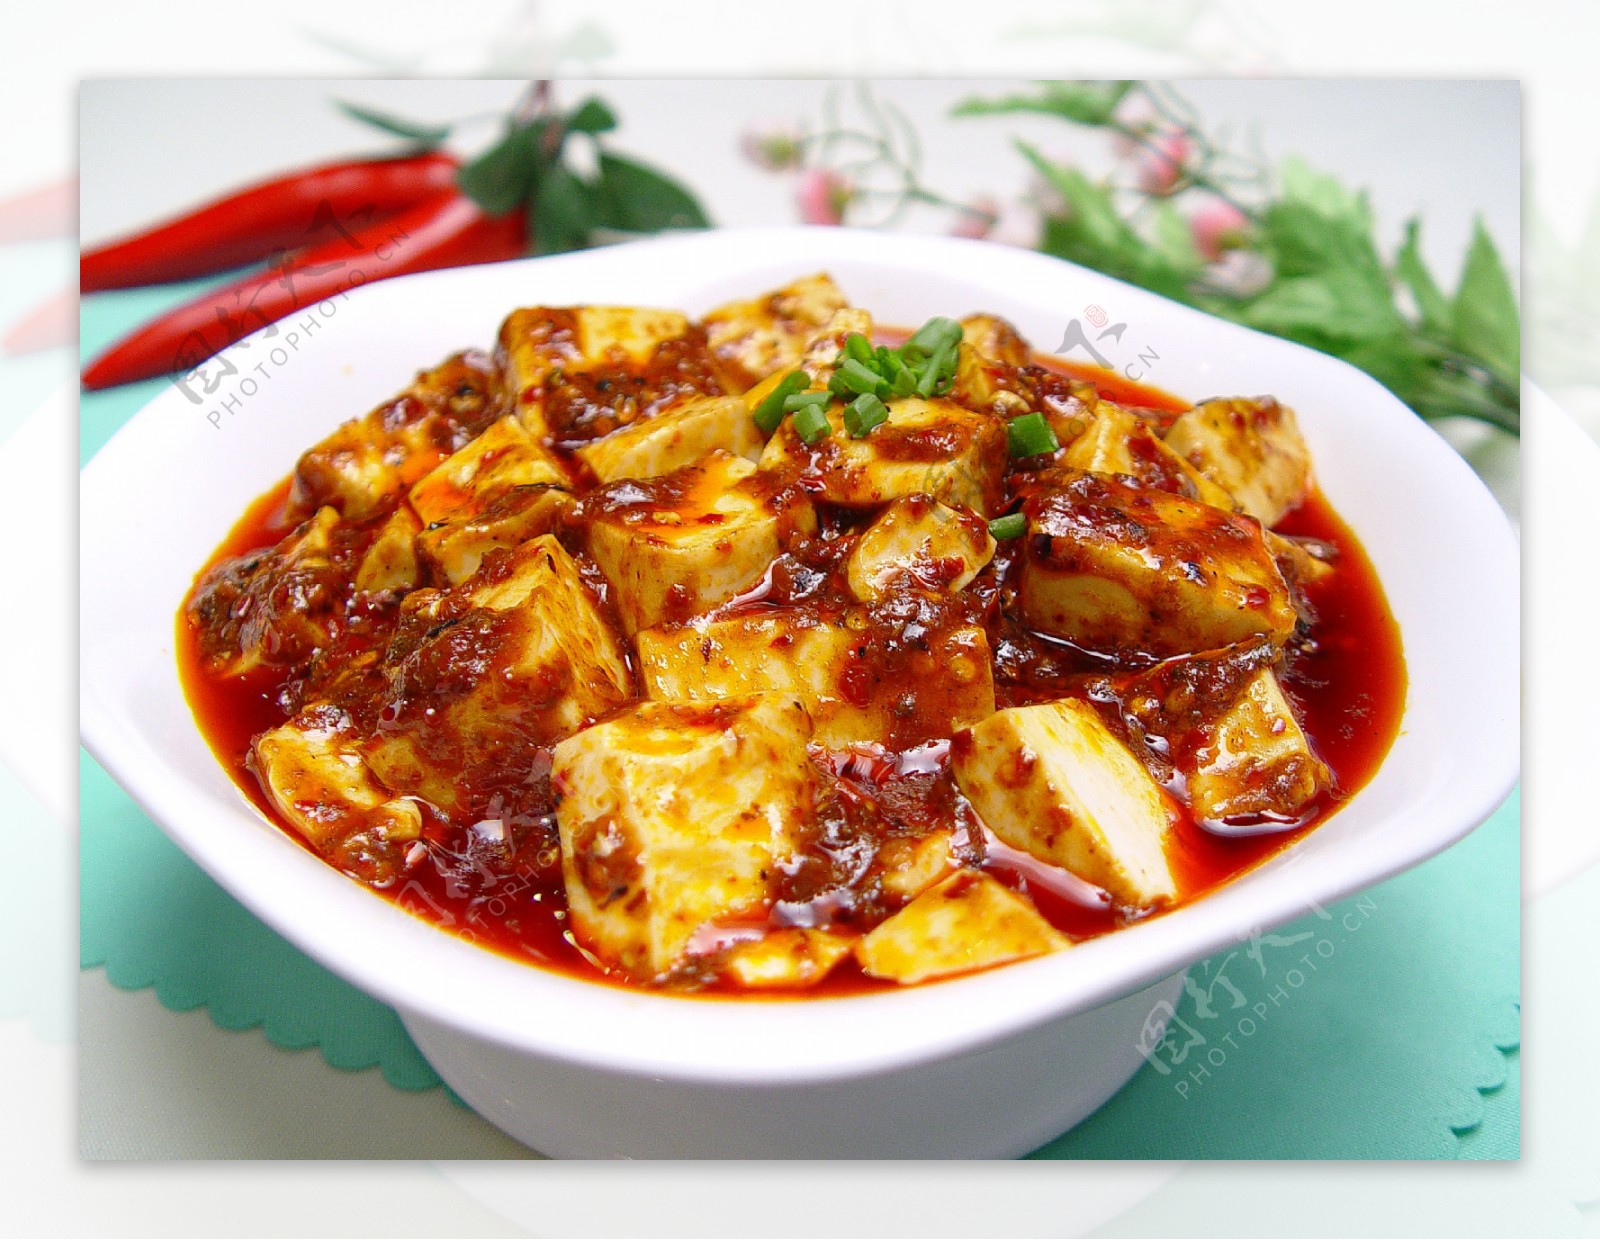 麻婆豆腐,麻婆豆腐的家常做法 - 美食杰麻婆豆腐做法大全